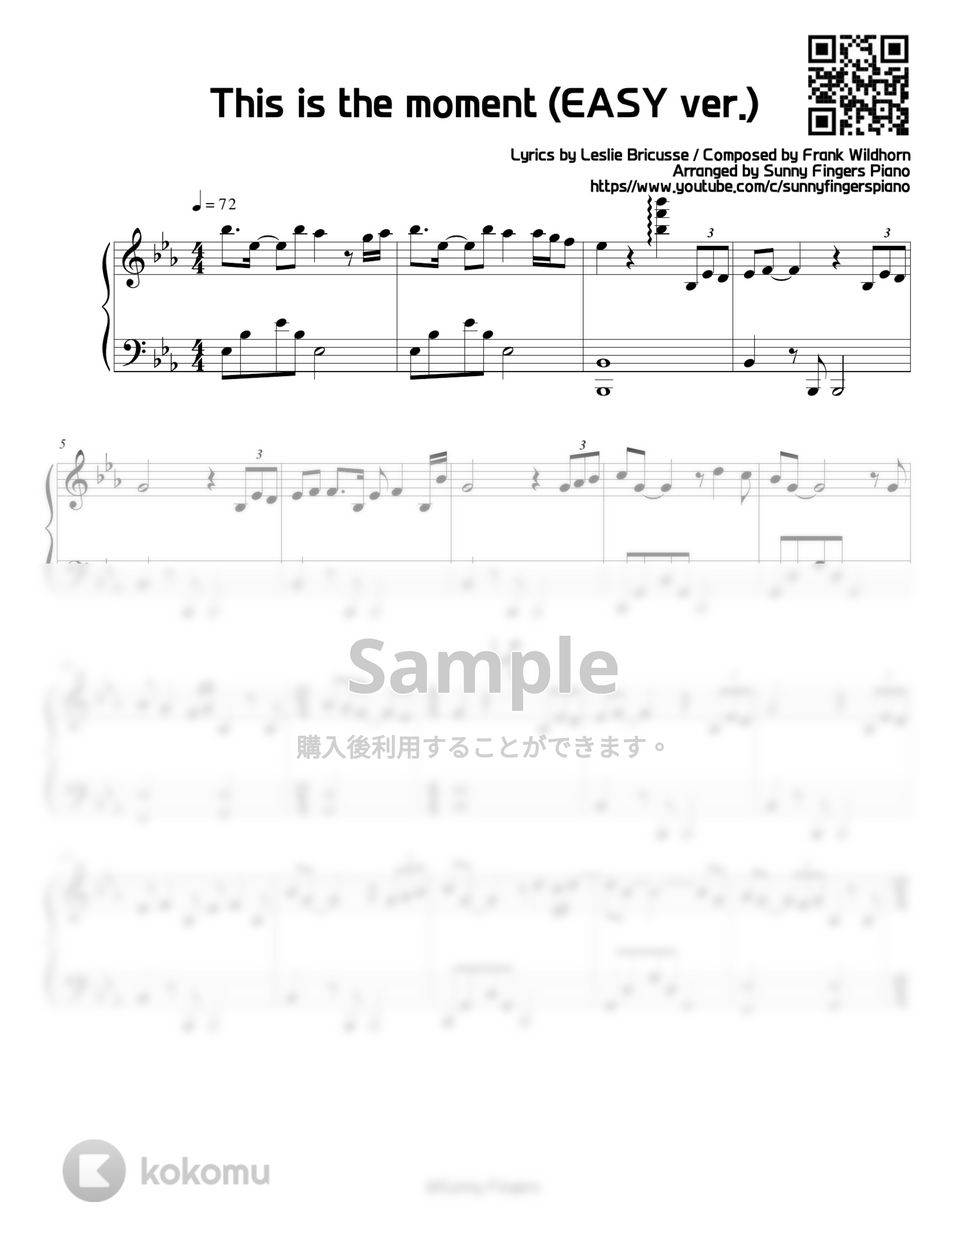 ジキルとハイド - This is the moment (EASY) by Sunny Fingers Piano